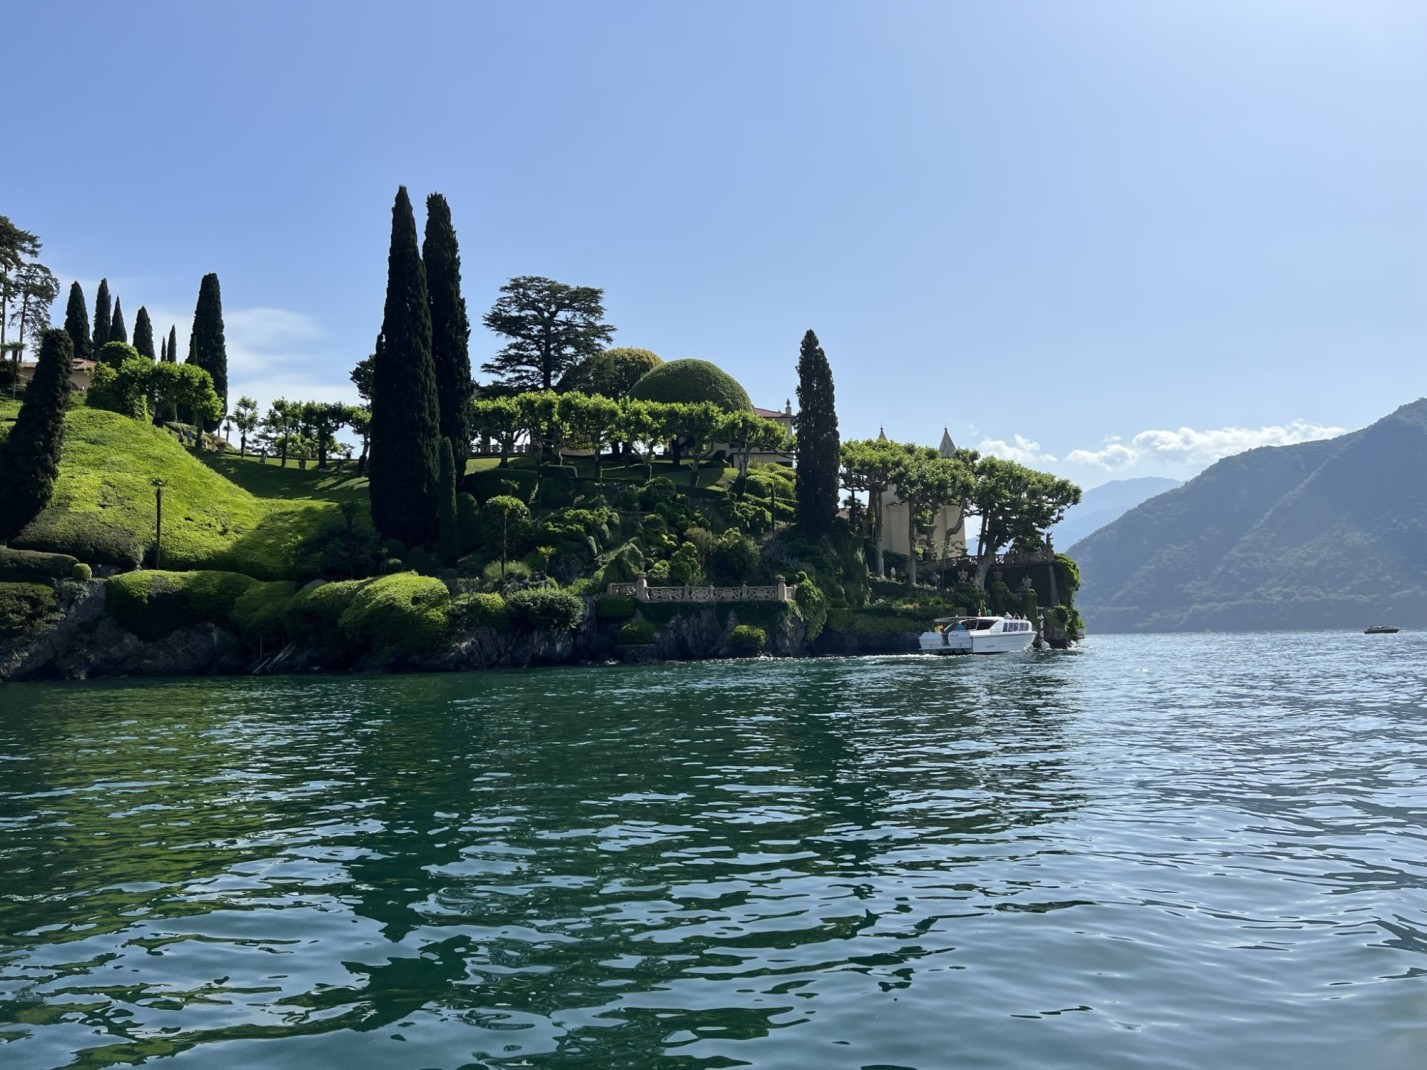 Villa del Balbianello in Lake Como from afar on a sunny day.